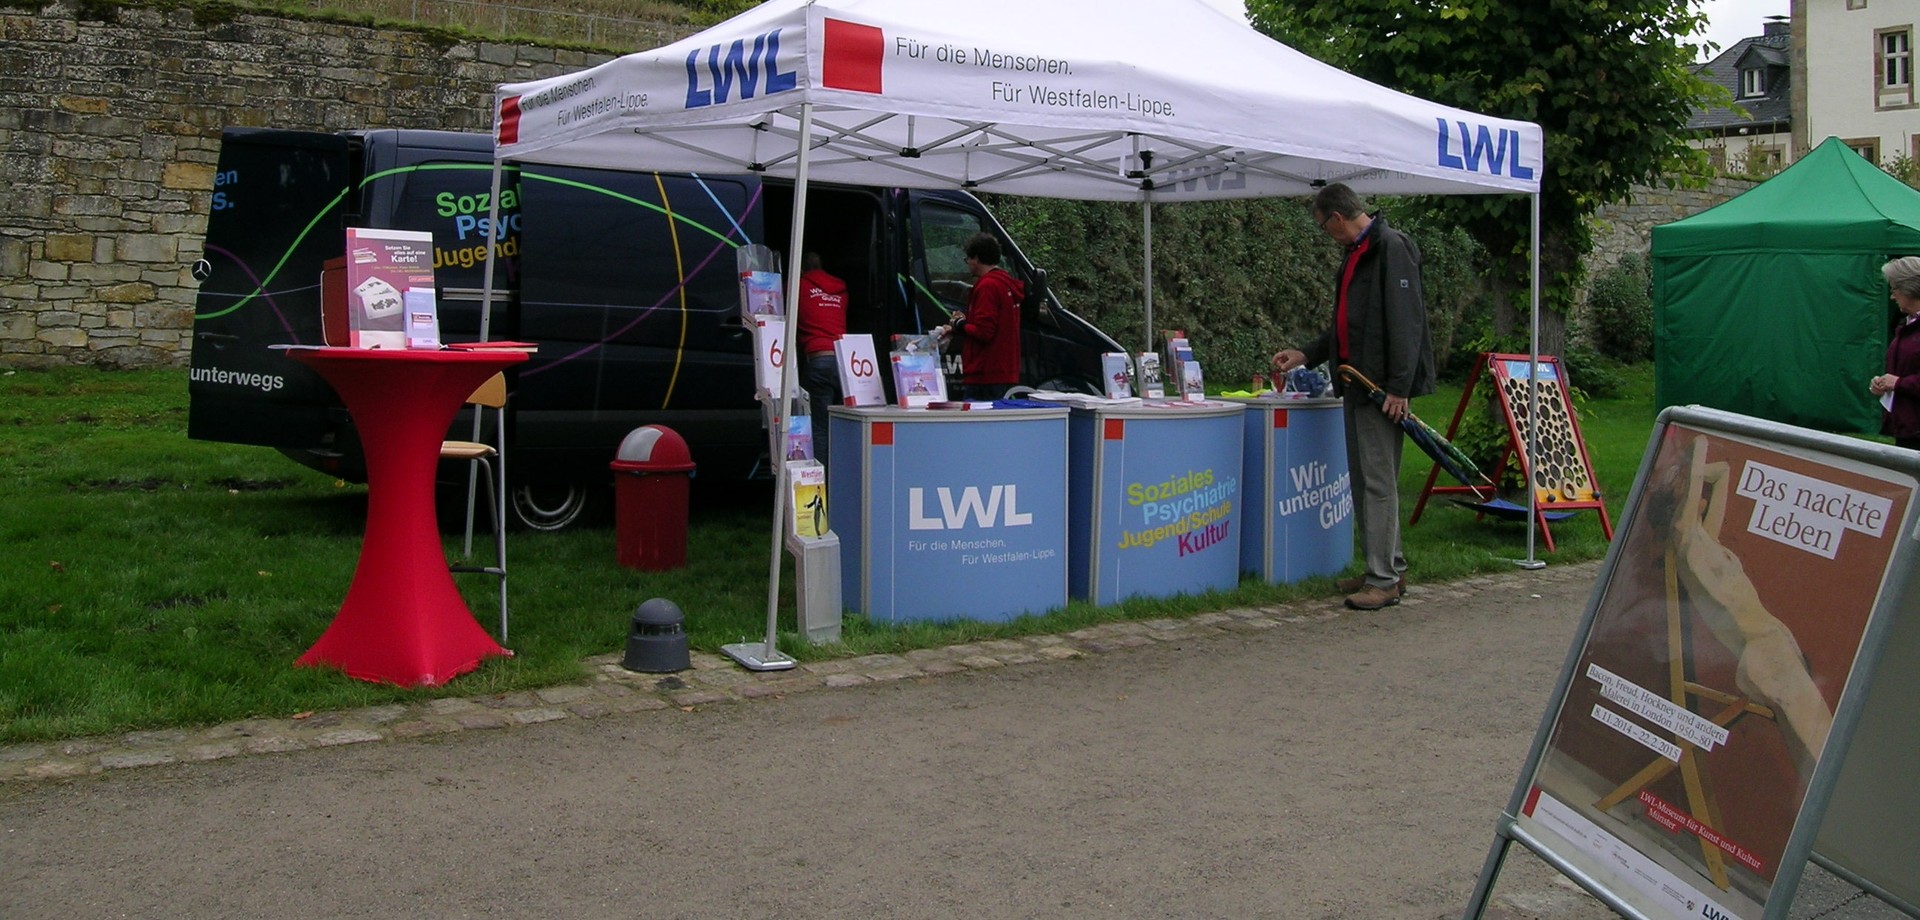 Auf dem Foto sieht man den Stand des LWL-Mobil auf dem Klostermarkt.

Foto: LWL